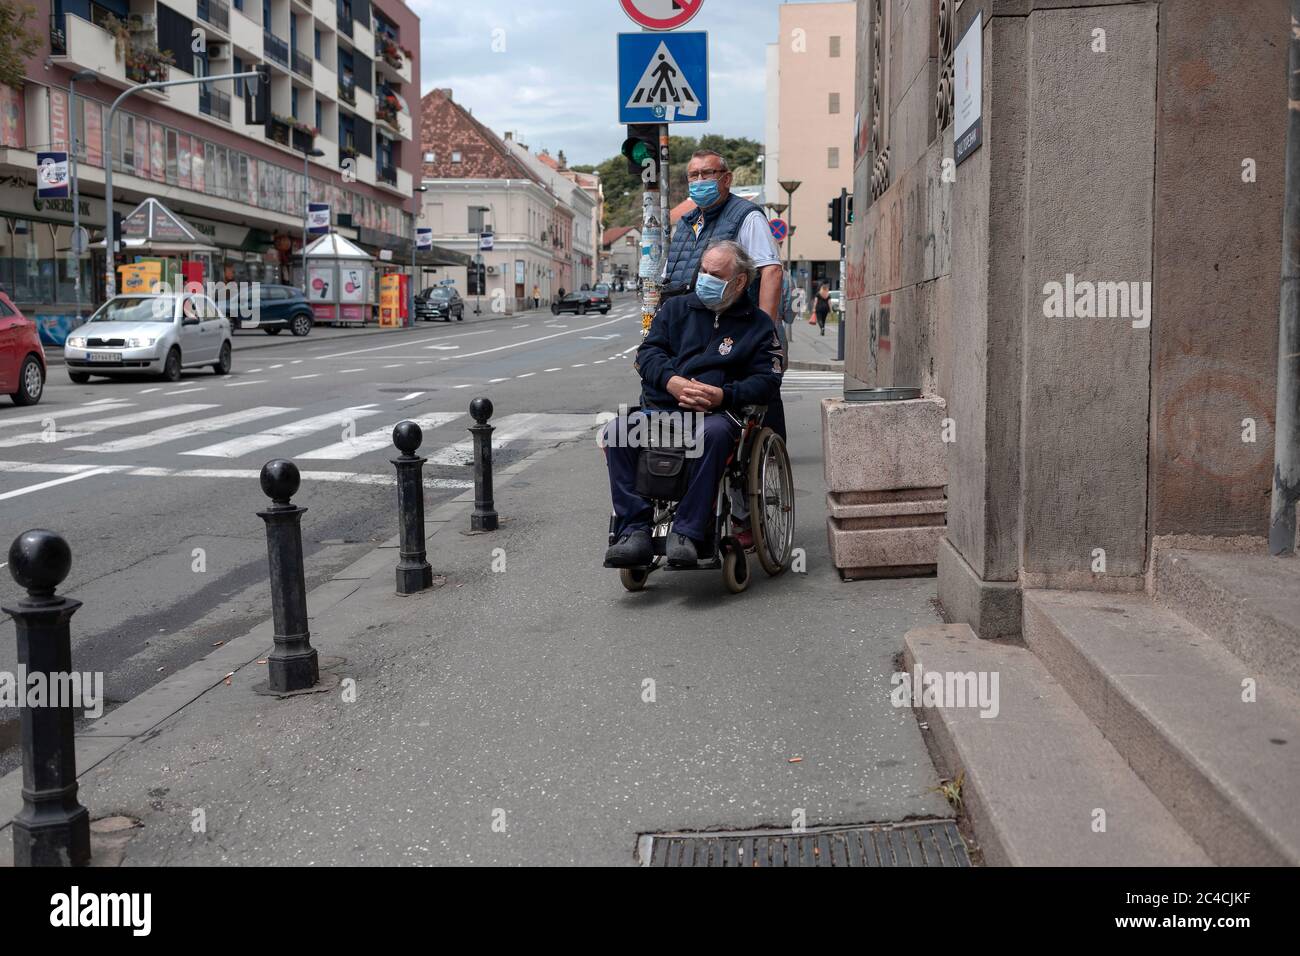 Belgrad, Serbien 18. Jun 2020: Ein Mann im Rollstuhl und sein Begleiter warten darauf, die Straße zu überqueren Stockfoto